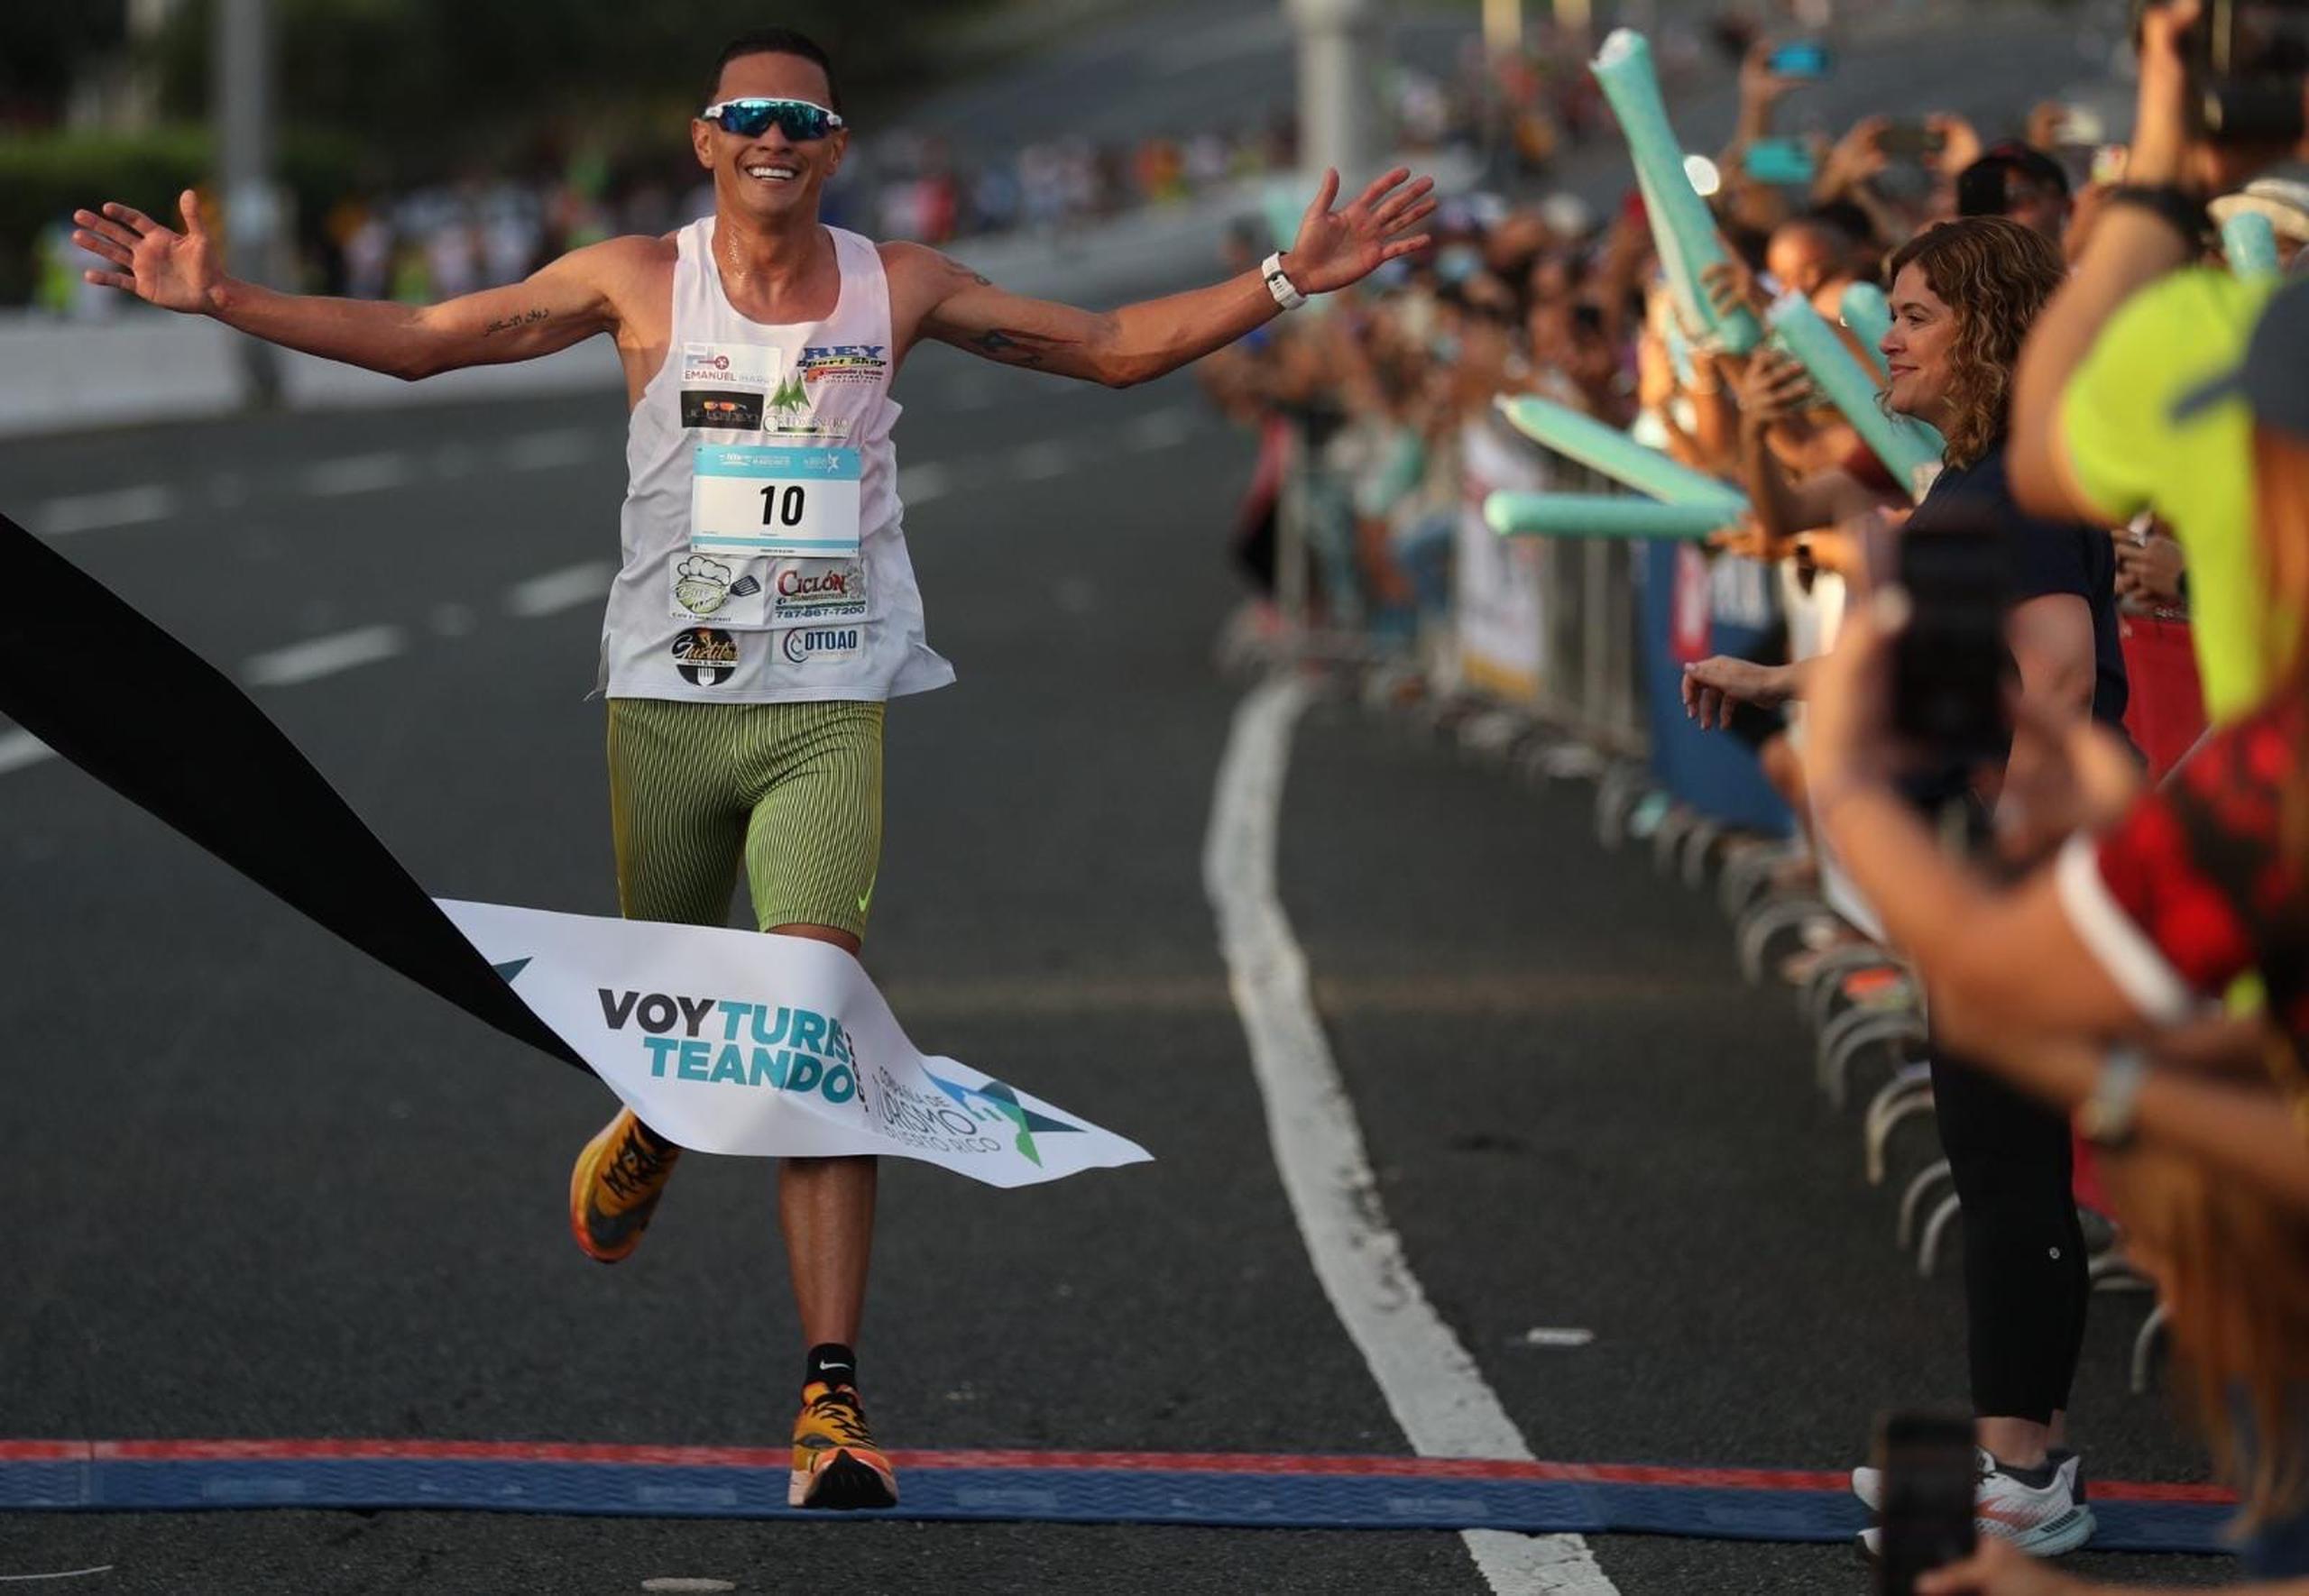 Alexander Torres levanta sus brazos al cruzar la meta para convertirse en el histórico primer ganador del Puerto Rico 10K Run.